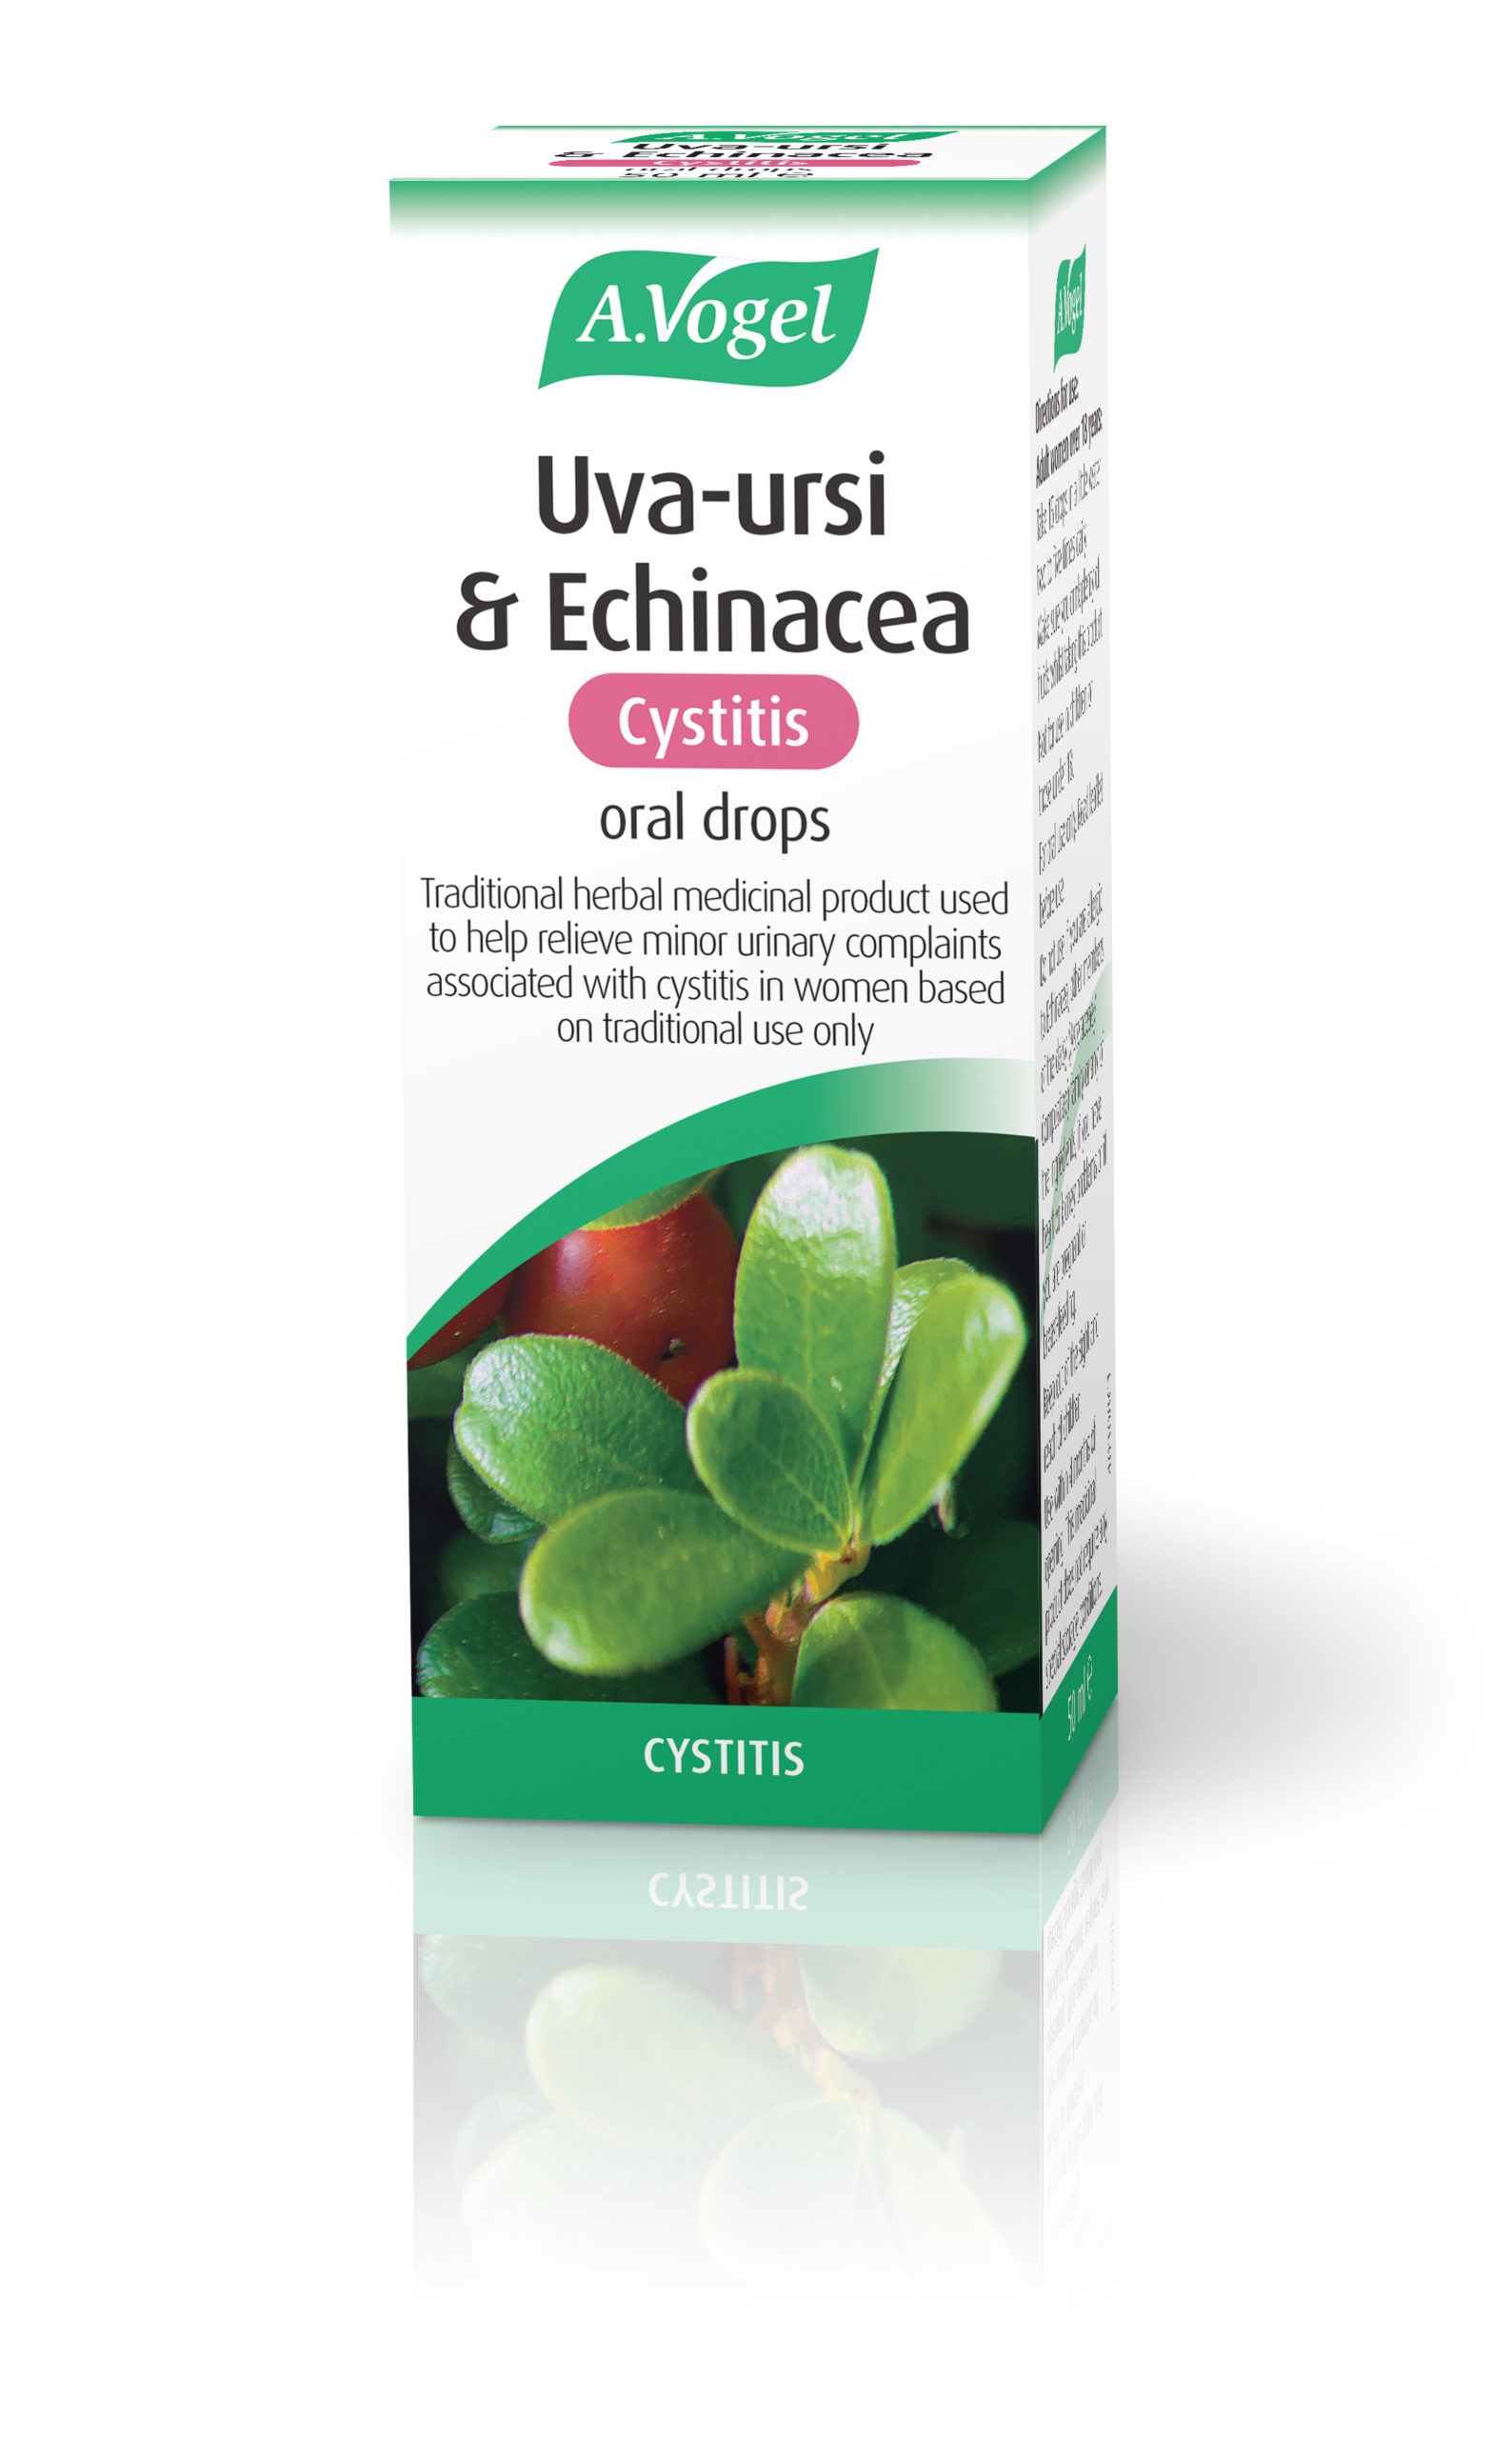 Uva-ursi & Echinacea Cystitis oral drops